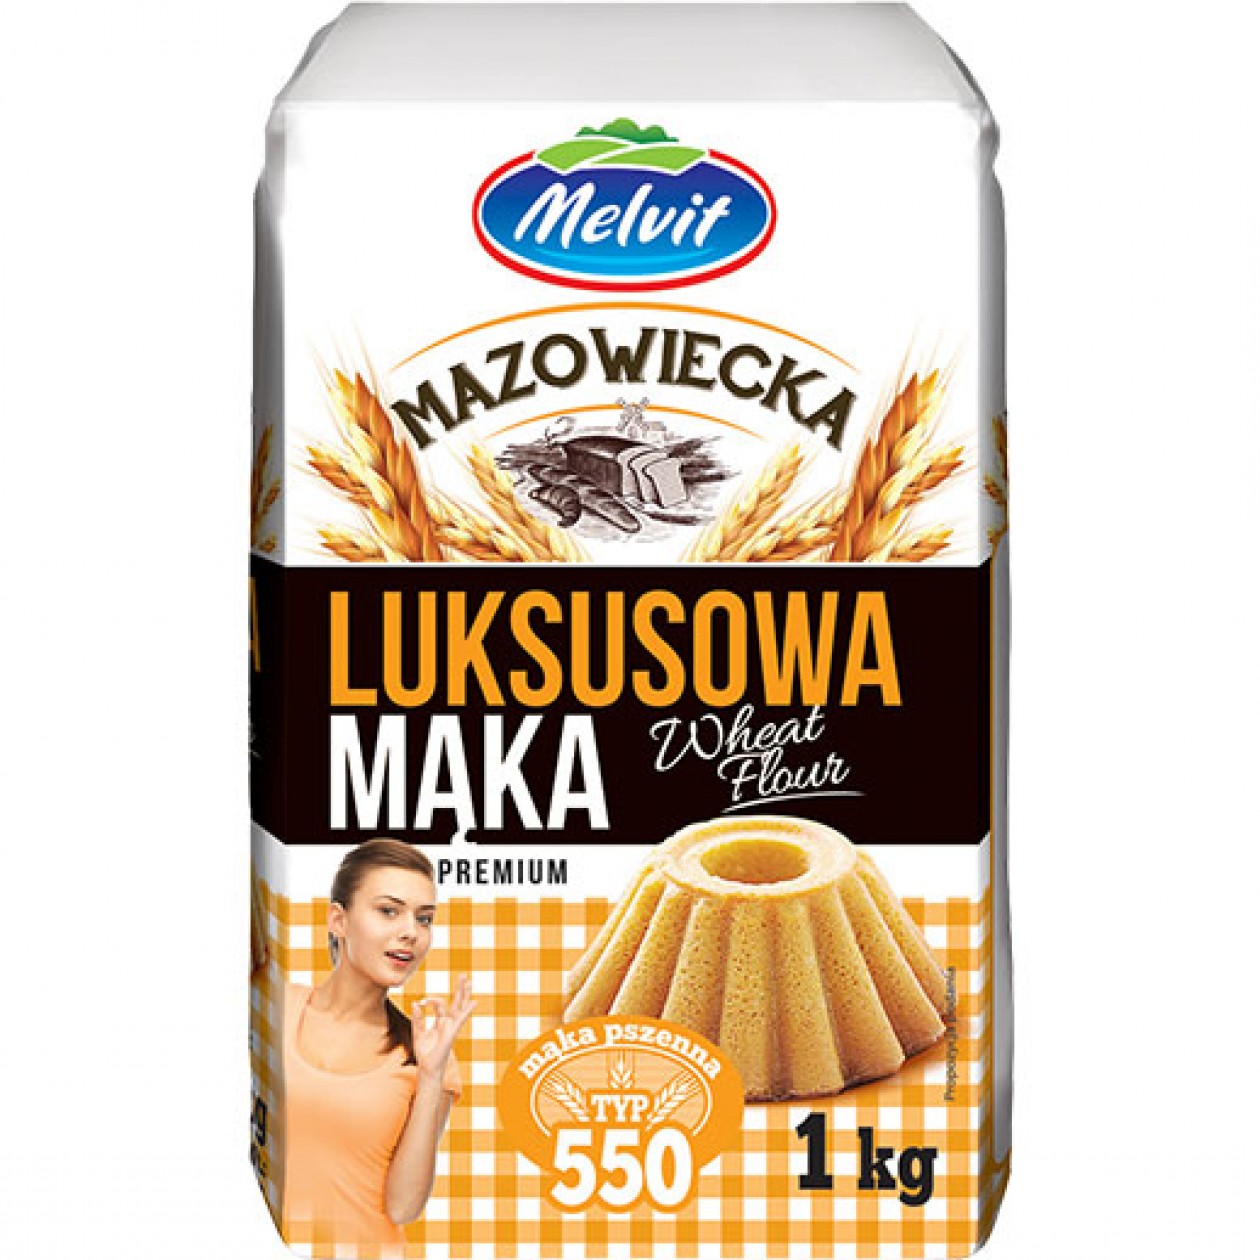 Melvit Maka Luksusowa Flour 10x1kg